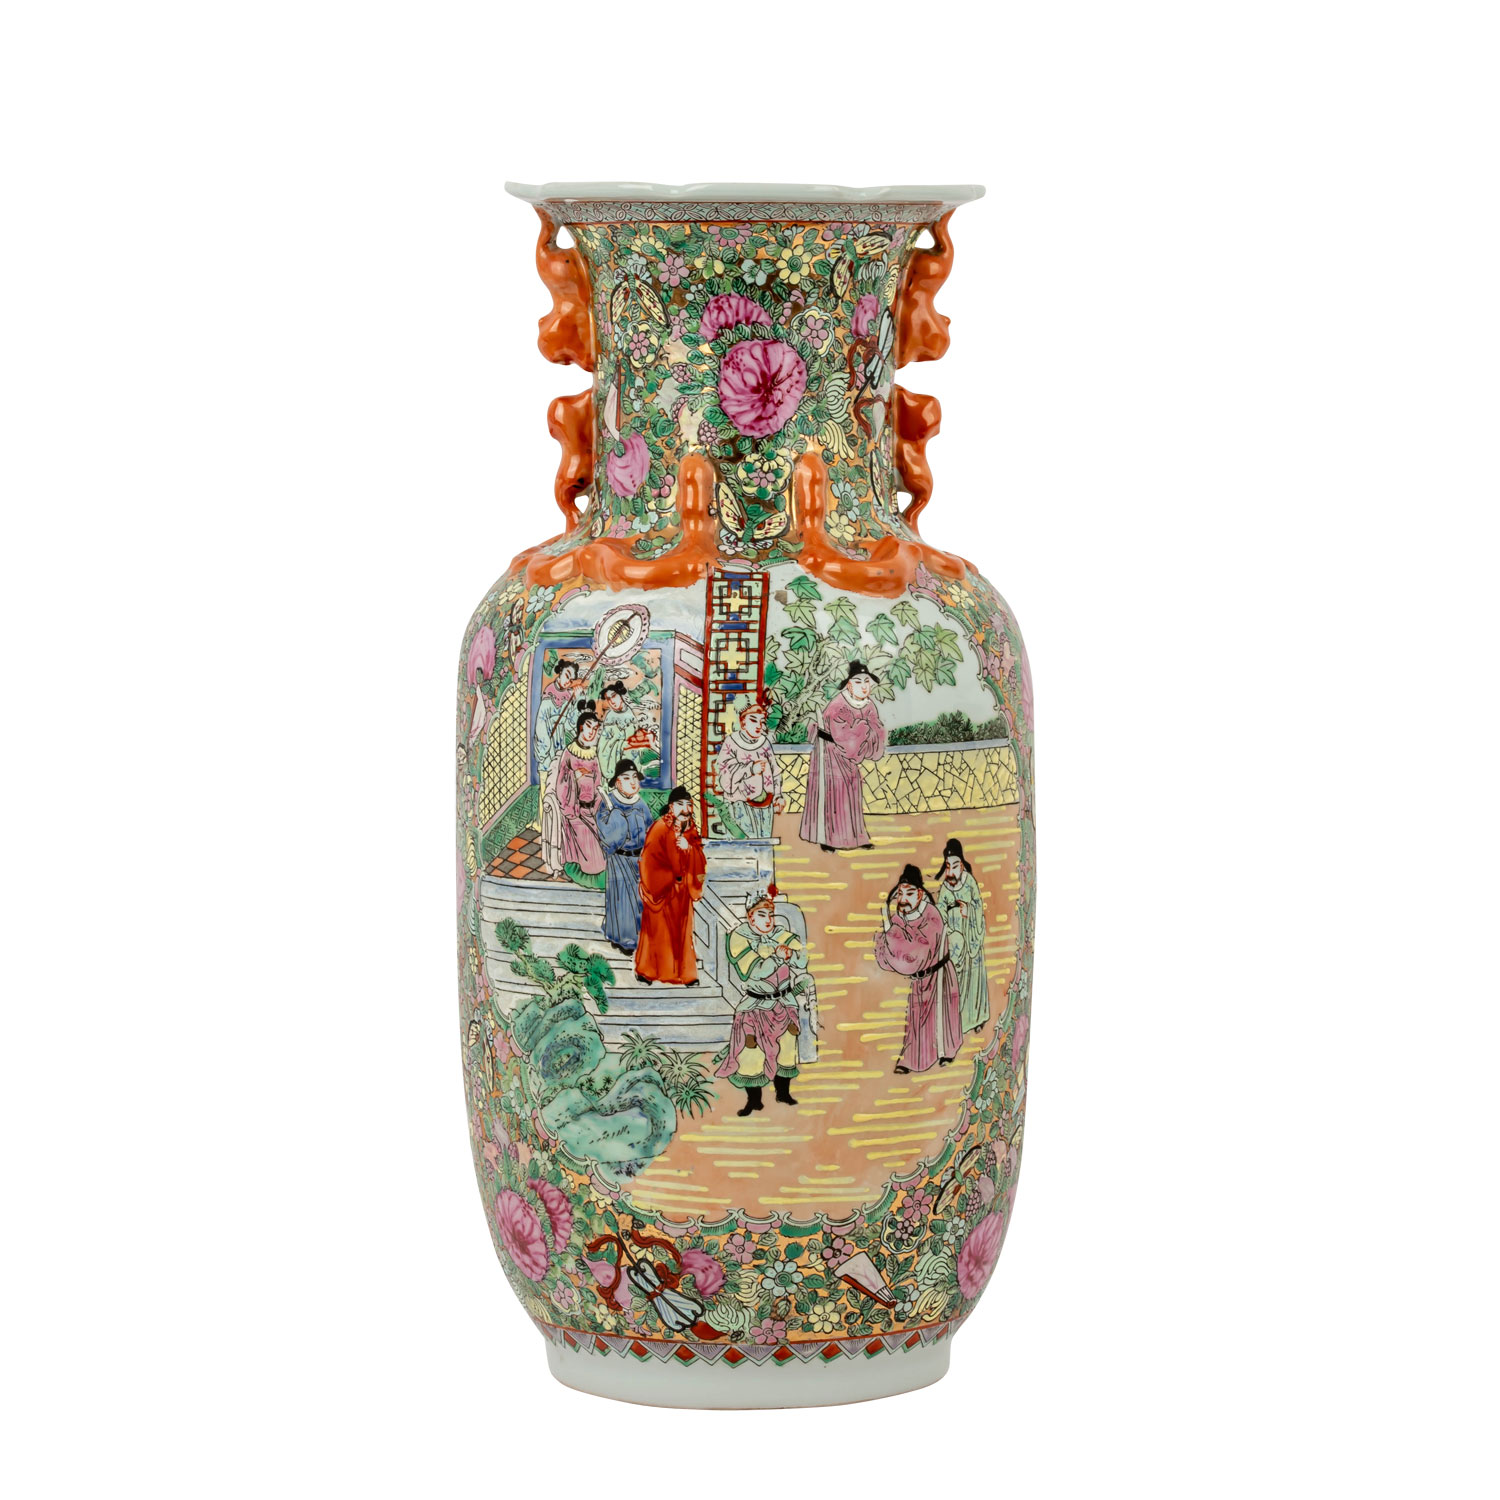 Famille rose-Vase im Kanton-Stil. CHINA, 20. Jh. - Bild 3 aus 6